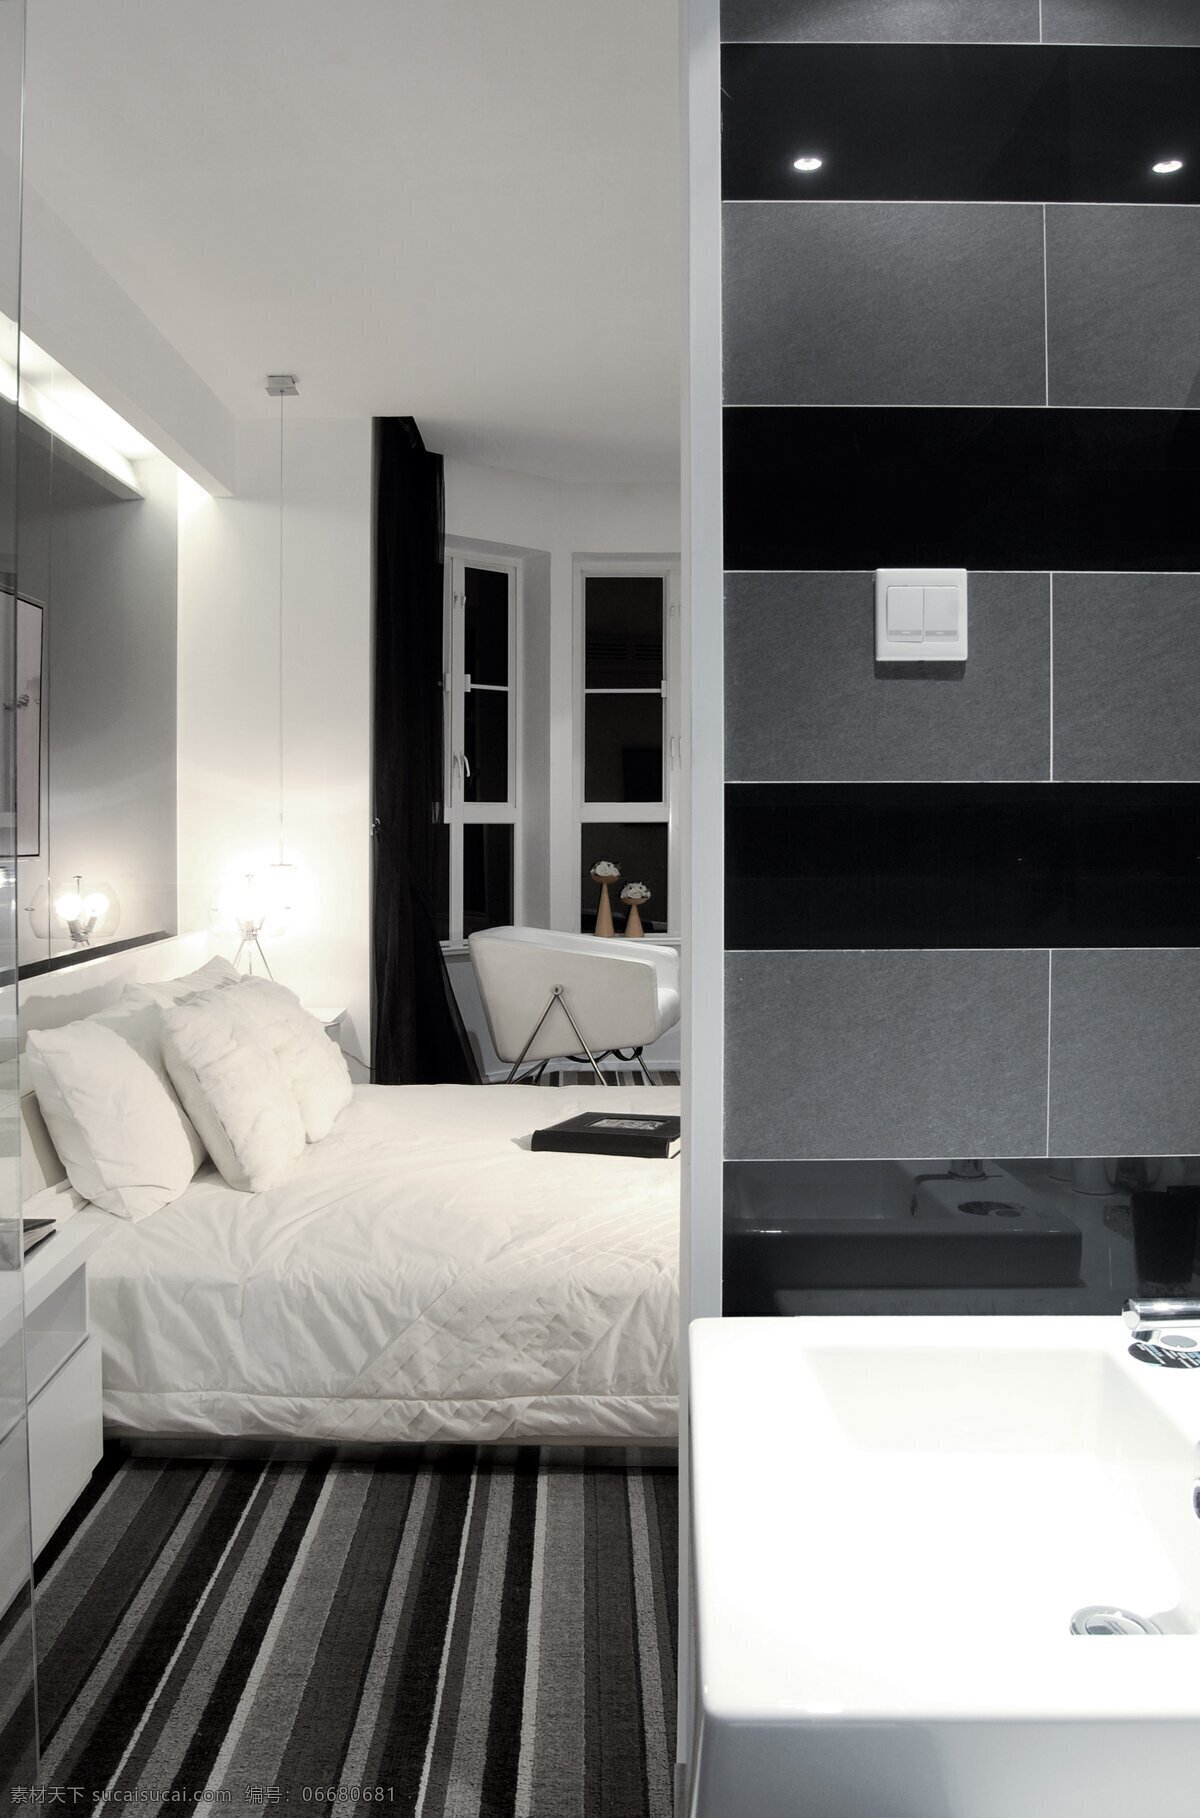 简约 风 室内设计 卧室 卫生间 效果图 现代 床 洗漱台 条纹地毯 白色 调 家装